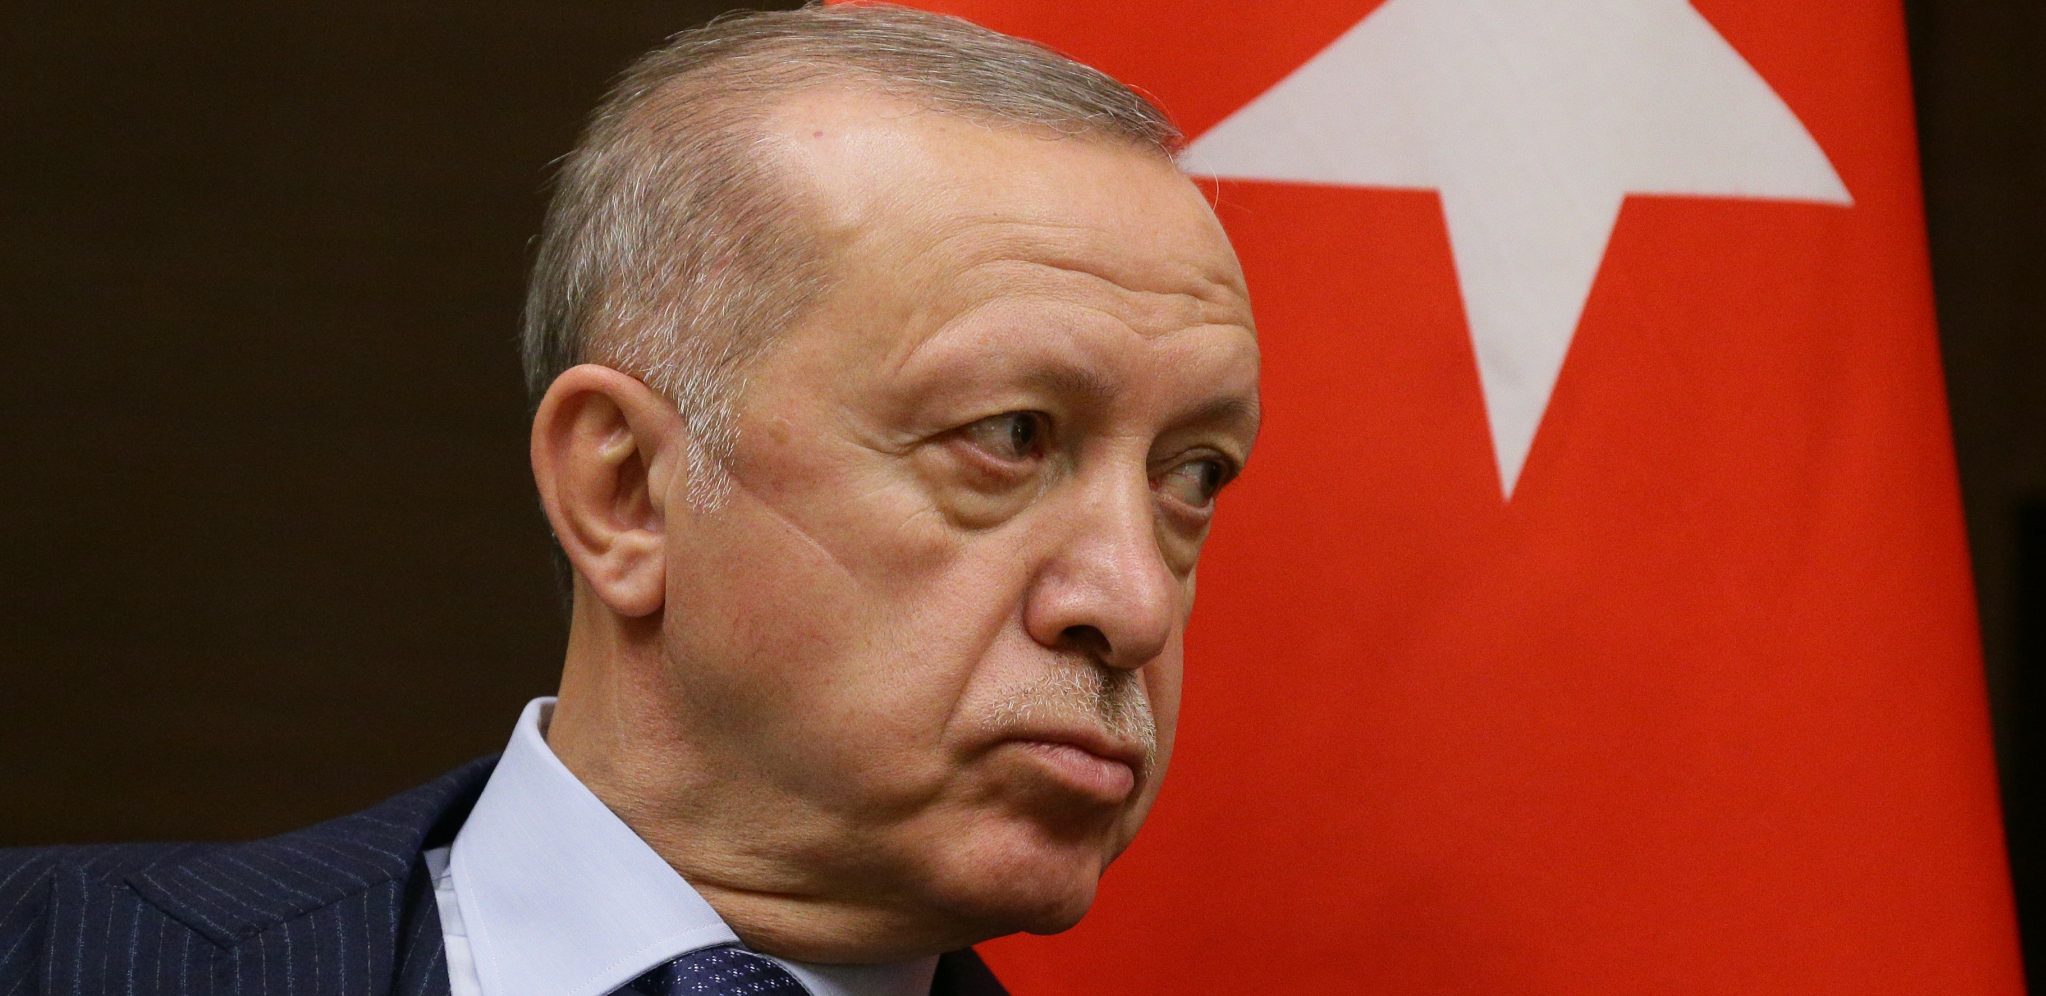 "UHAPŠEN JE!" Erdogan na povratku sa Balkana iz predsedničkog aviona saopštio važnu vest! (VIDEO)